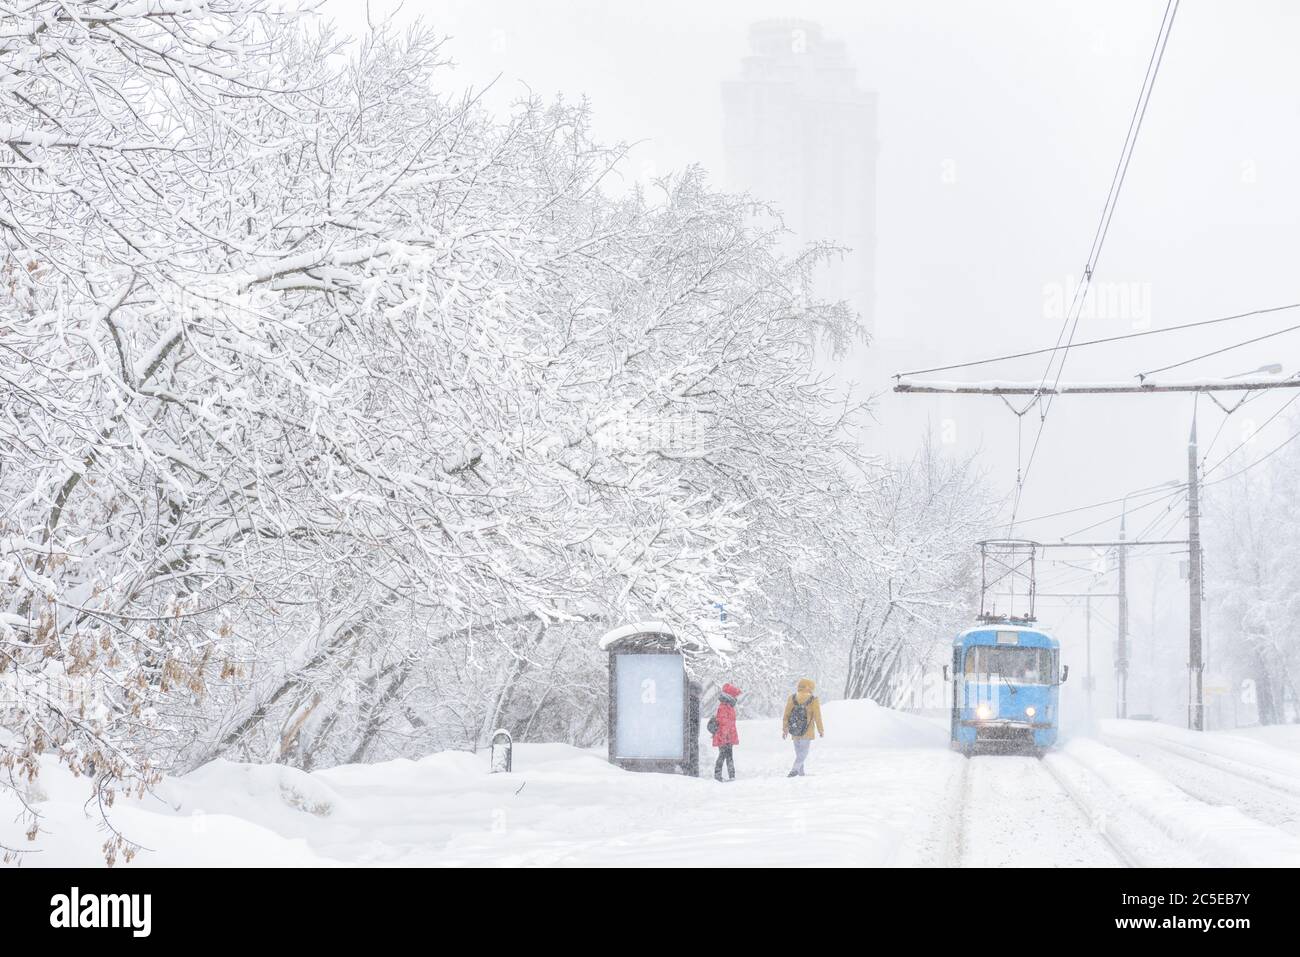 Tram fährt während Schneesturm im Winter, Moskau, Russland. Die Leute warten auf einen eisigen Stopp. Kälte und Schneefall in der Stadt. Landschaftlich reizvolle Panorama der Stockfoto